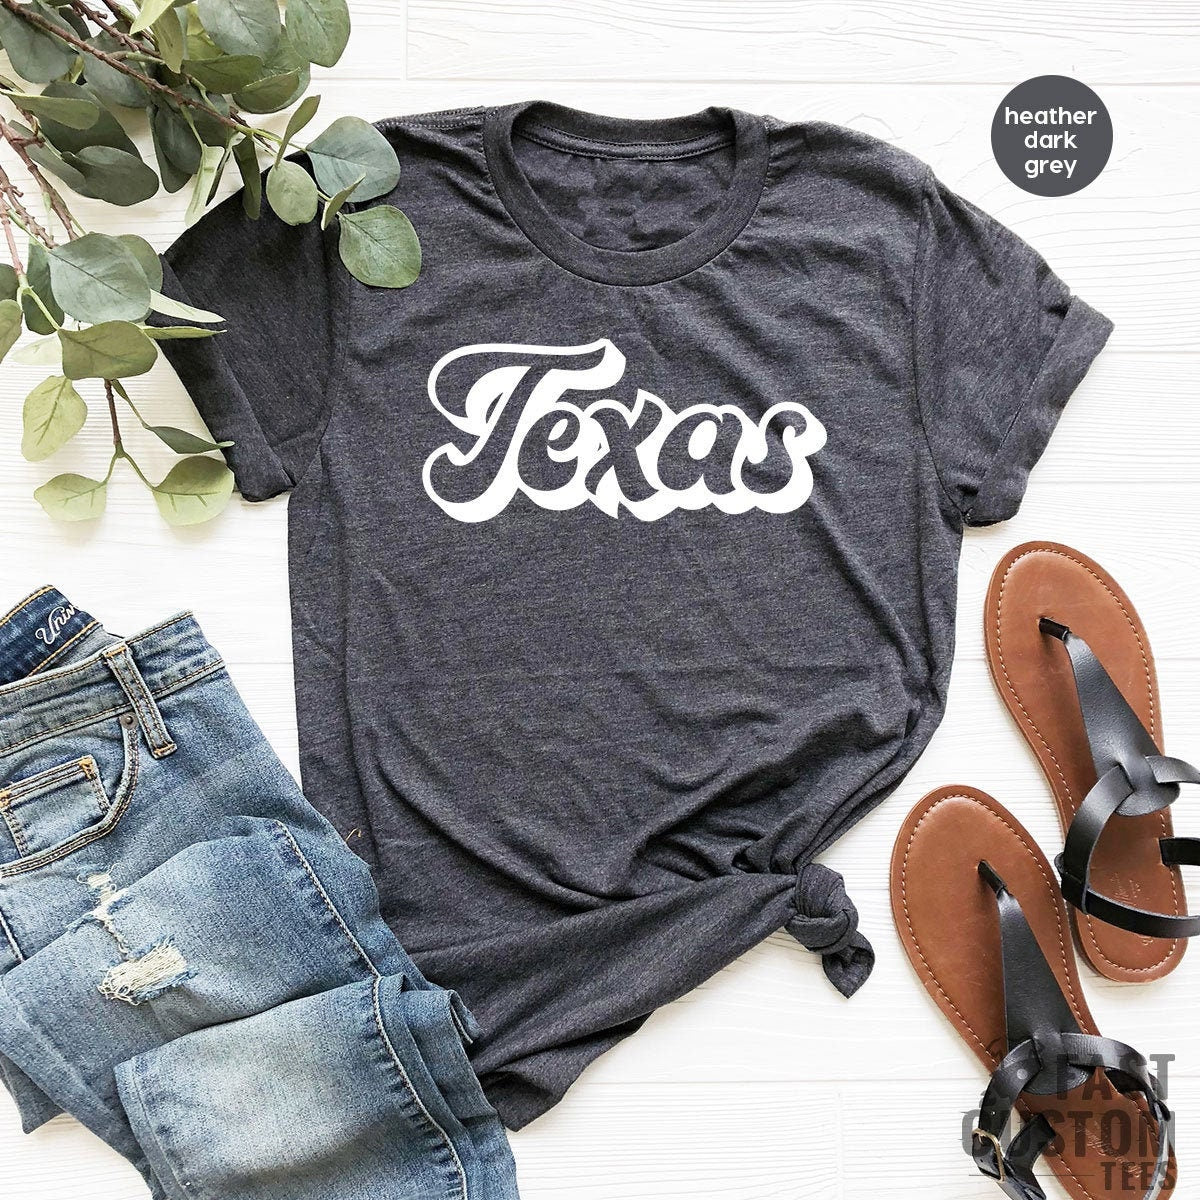 Texas TShirt, Texas Tee, Texas City Shirts, Texas State T Shirt, Texas Lover Gift, Texas Home T-shirt, Texas T shirt, Texas Lover Shirt - Fastdeliverytees.com